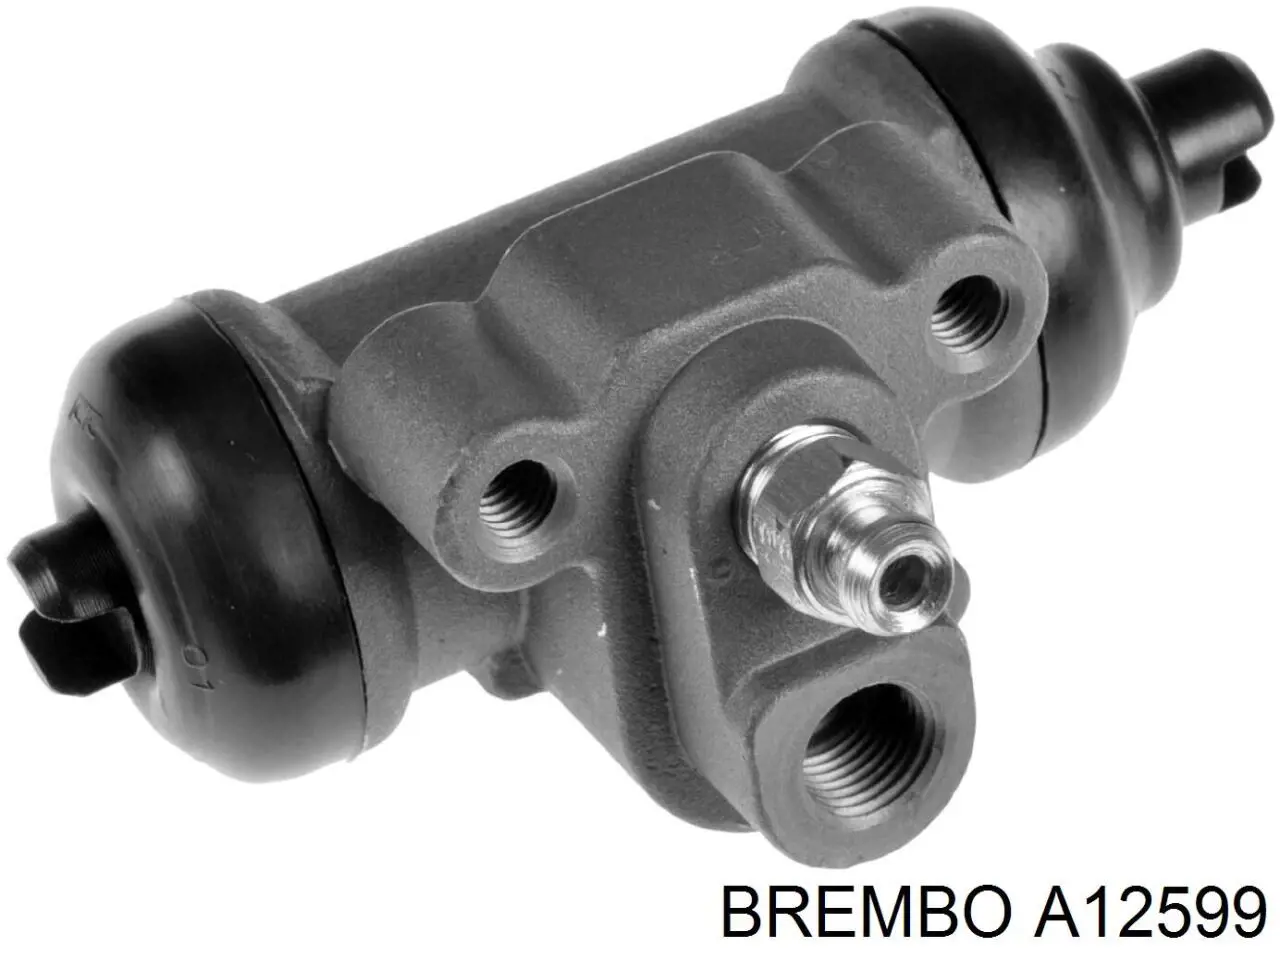 A12599 Brembo cilindro de freno de rueda trasero